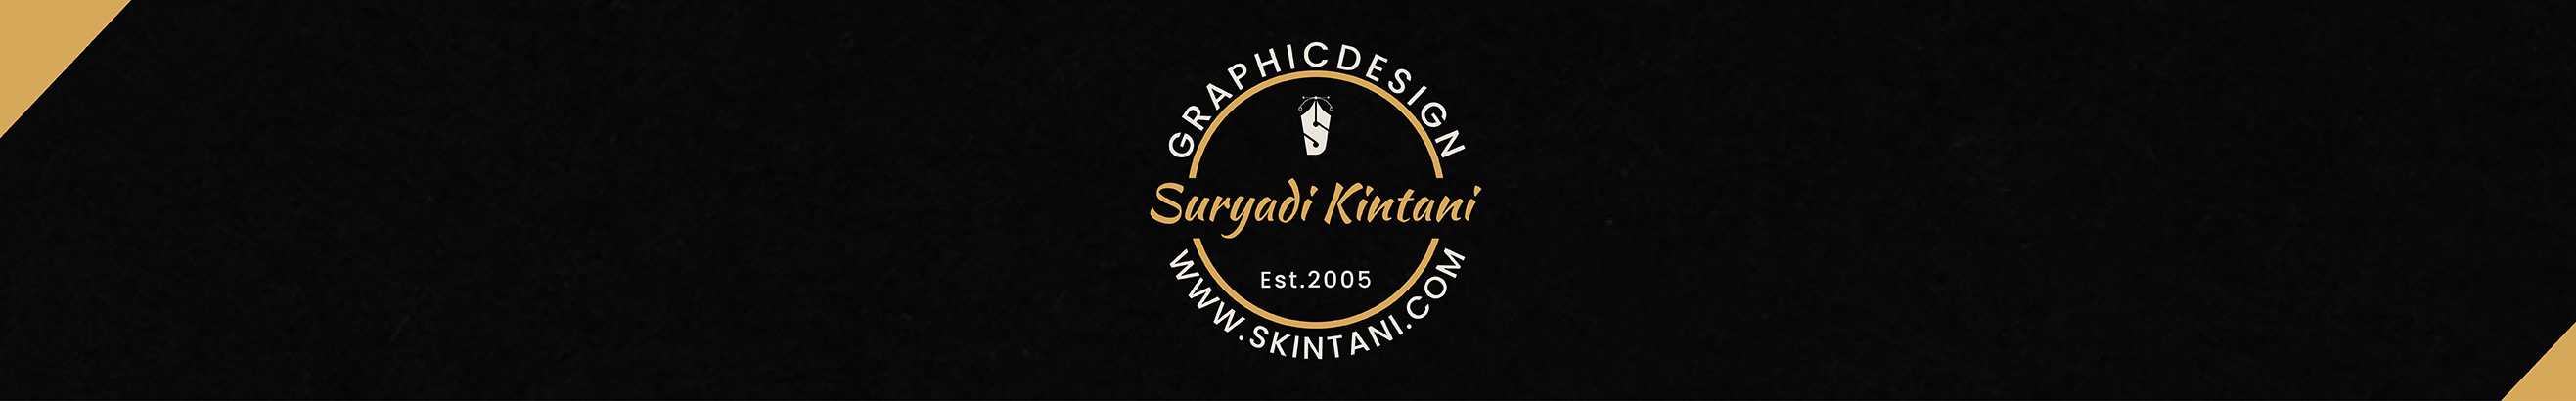 Suryadi Kintani's profile banner